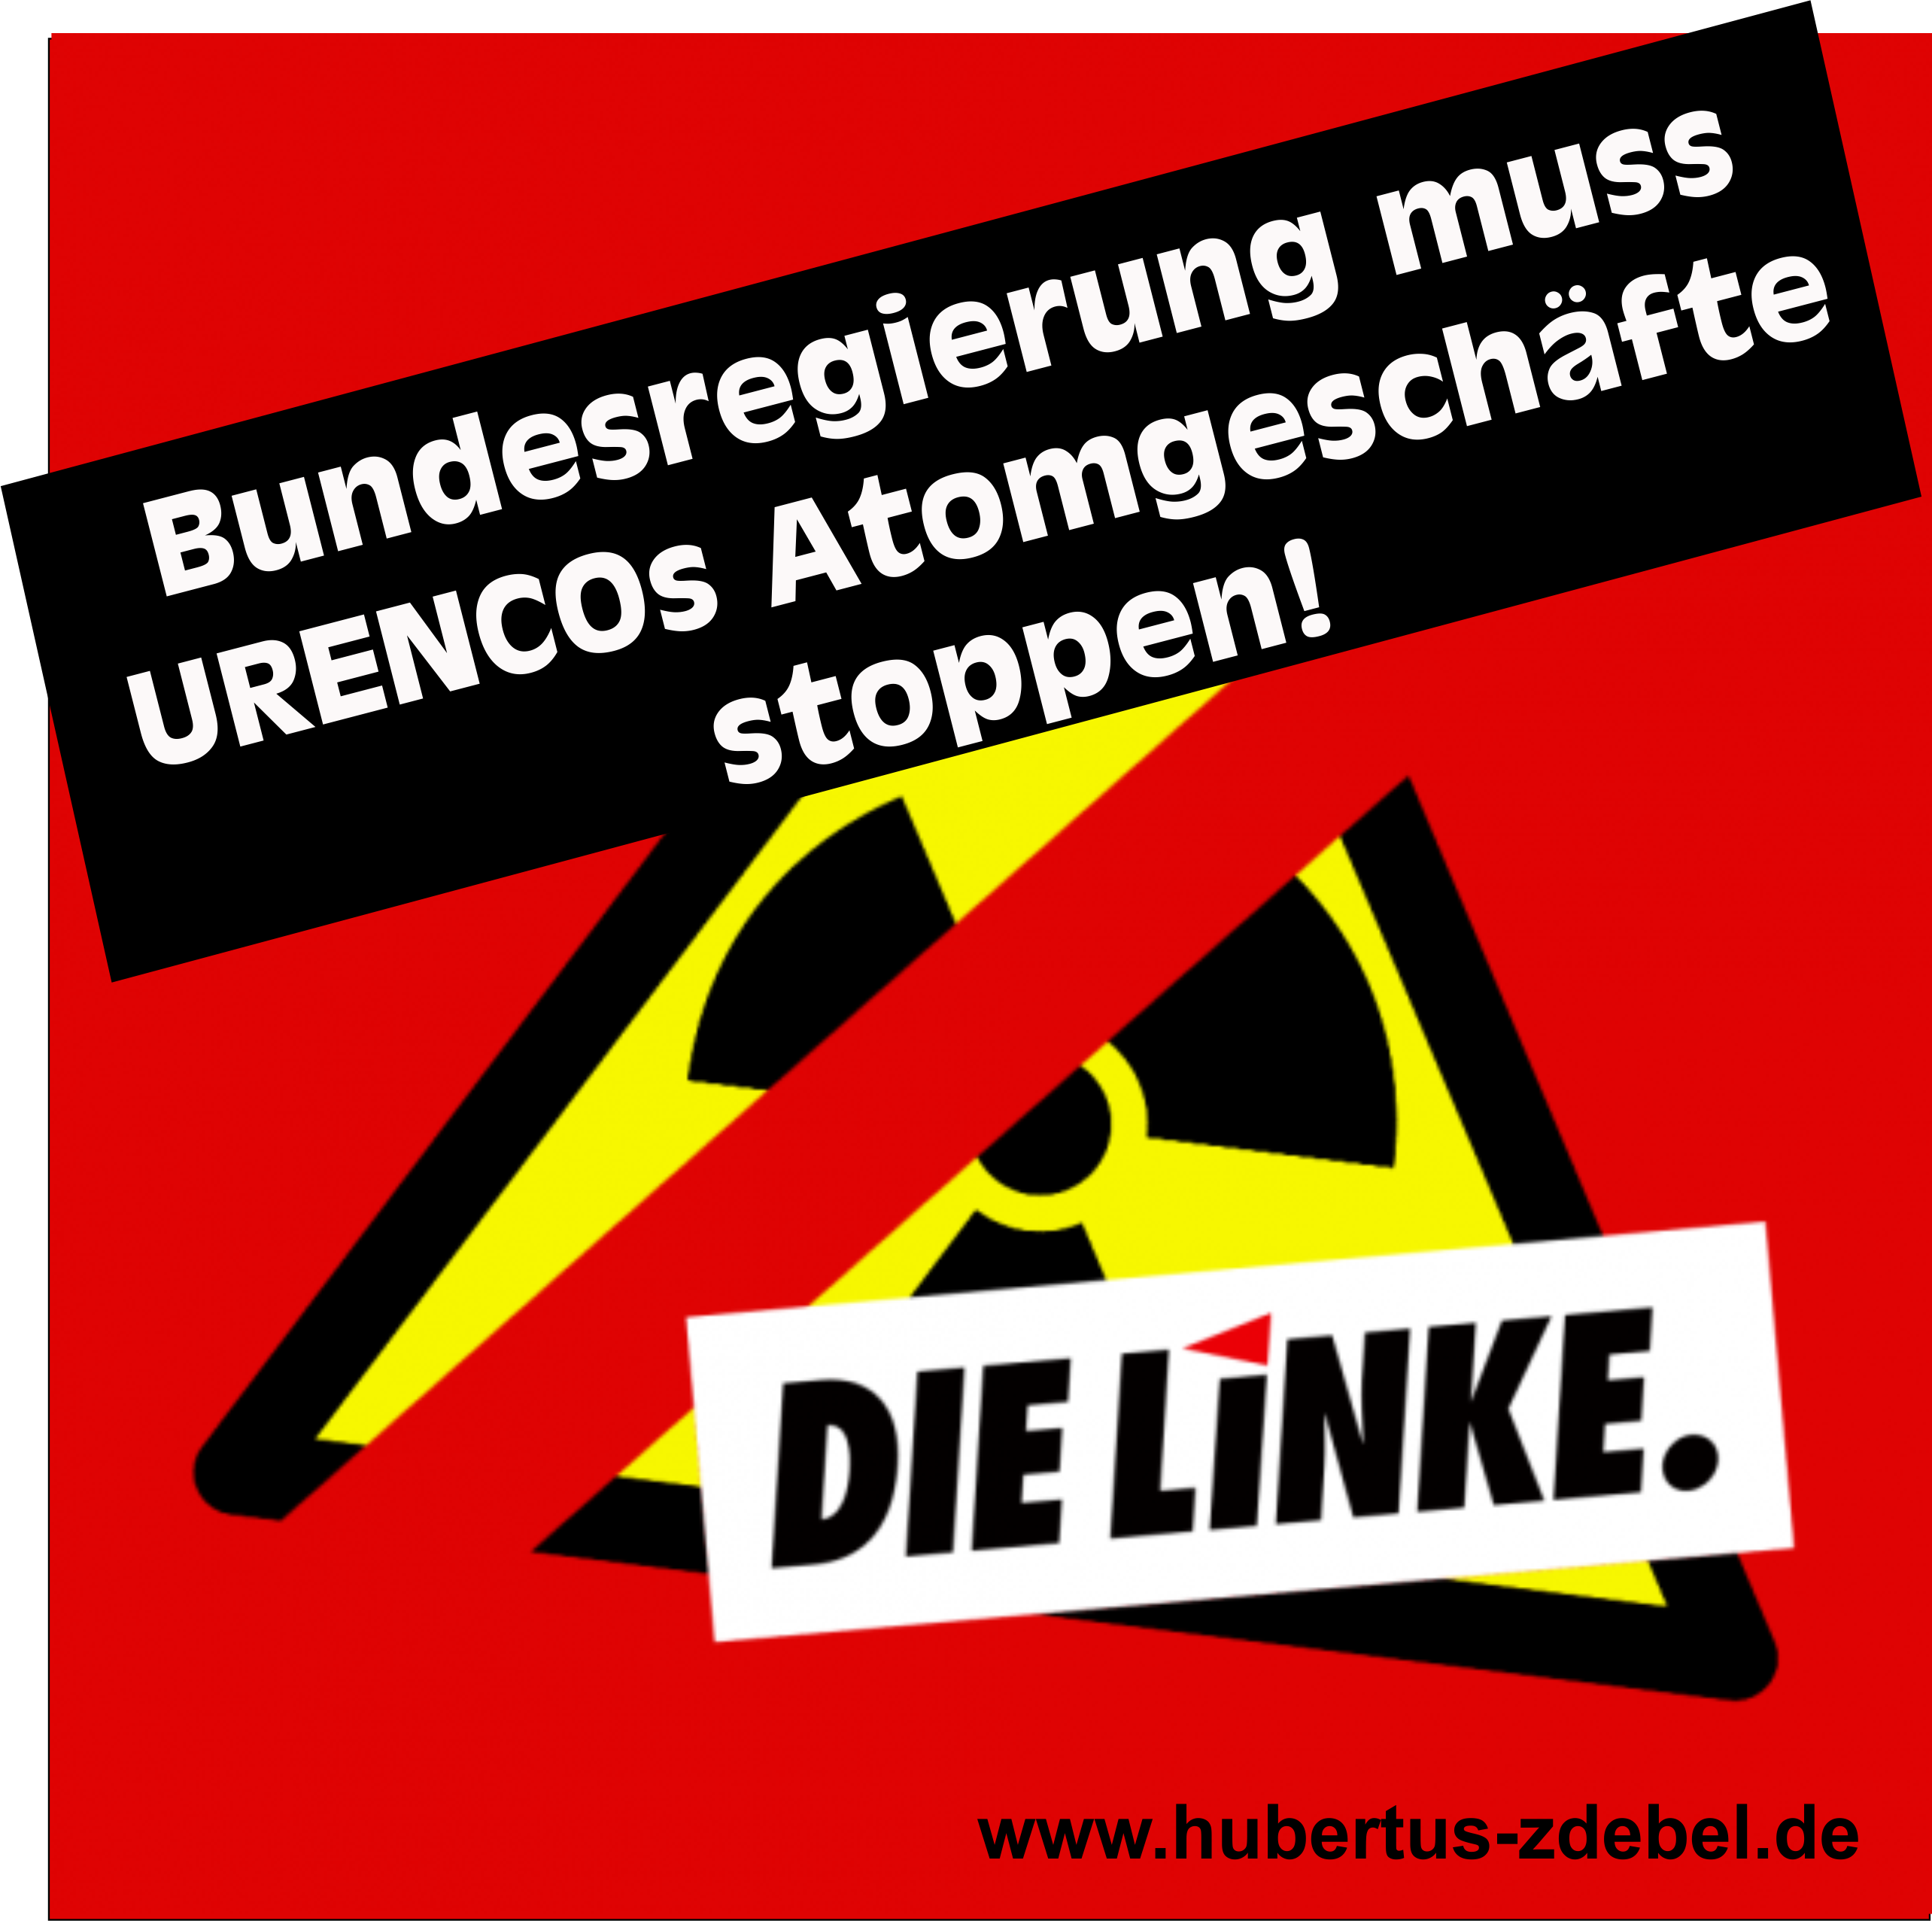 Ostermarsch Appel 2020: Urananreicherung beenden!